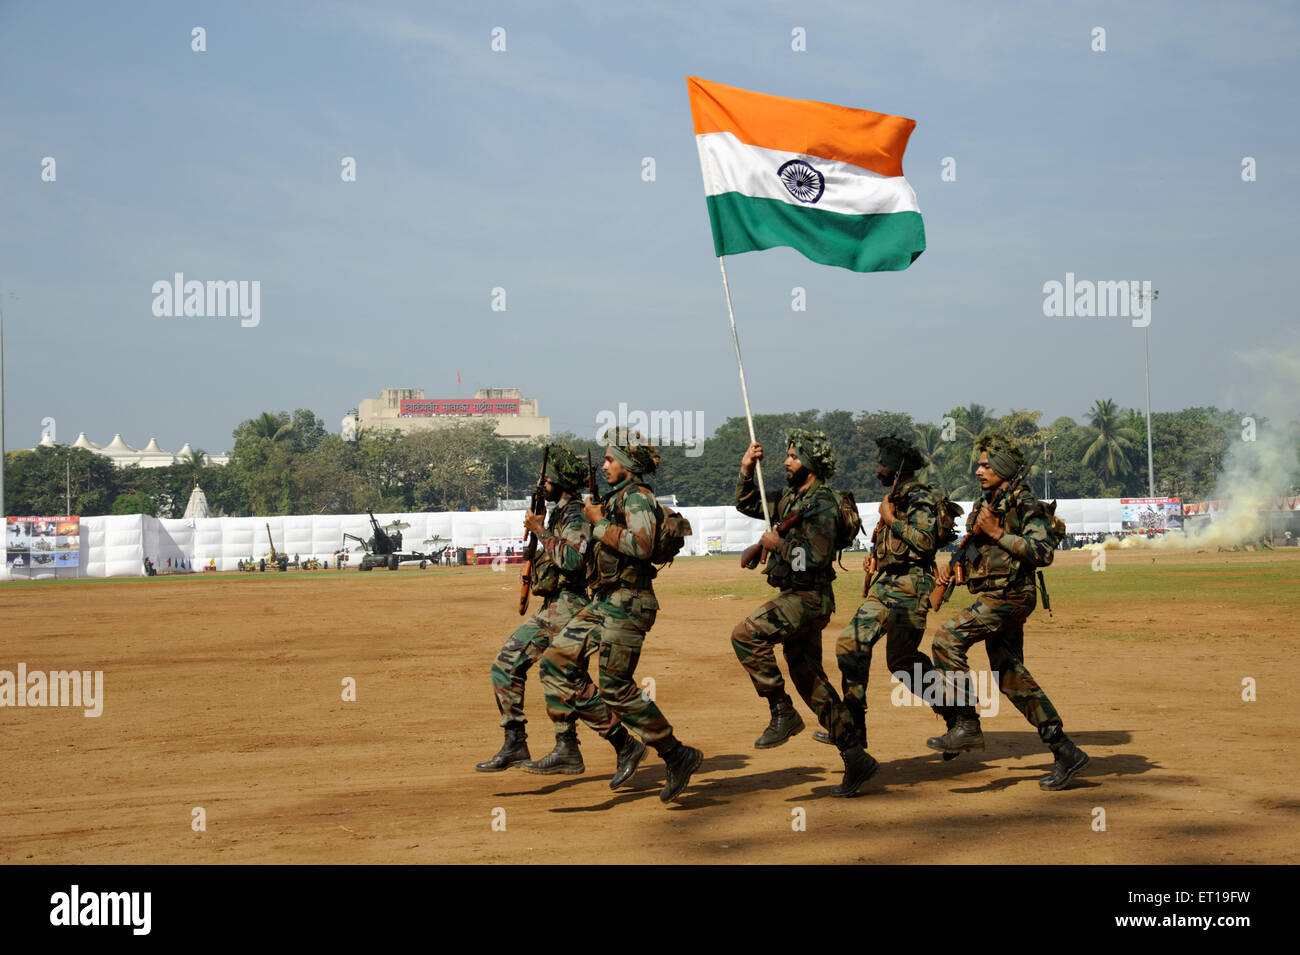 République de l'armée indienne Parade fête avec drapeau de l'Inde Mumbai Maharashtra Inde Asie dadar Banque D'Images